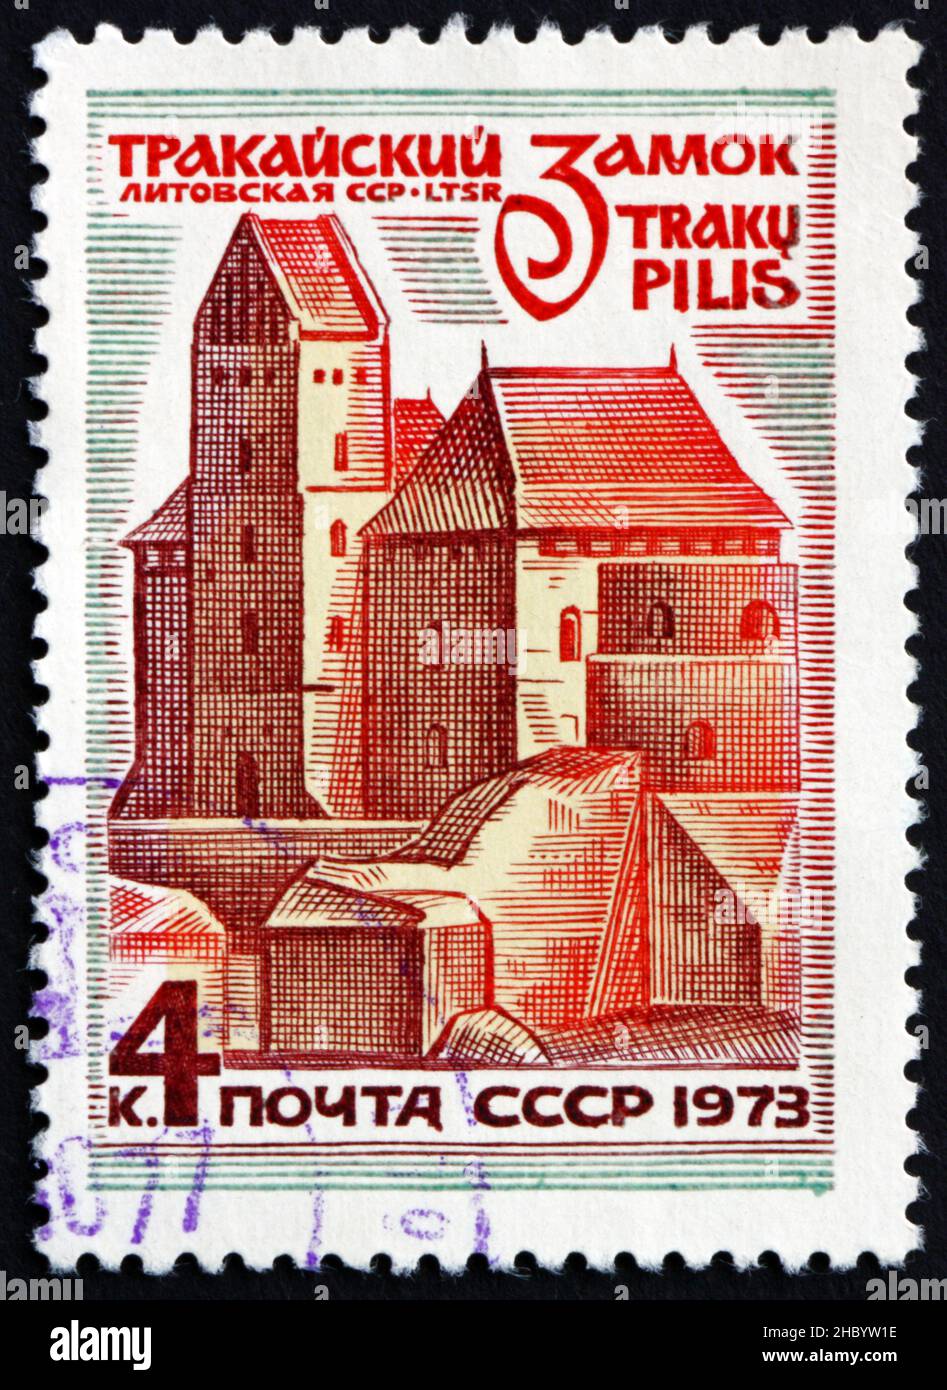 RUSSIE - VERS 1973 : un timbre imprimé en Russie montre le petit château Trakai, Lituanie, Architecture de la région Baltique, vers 1973 Banque D'Images